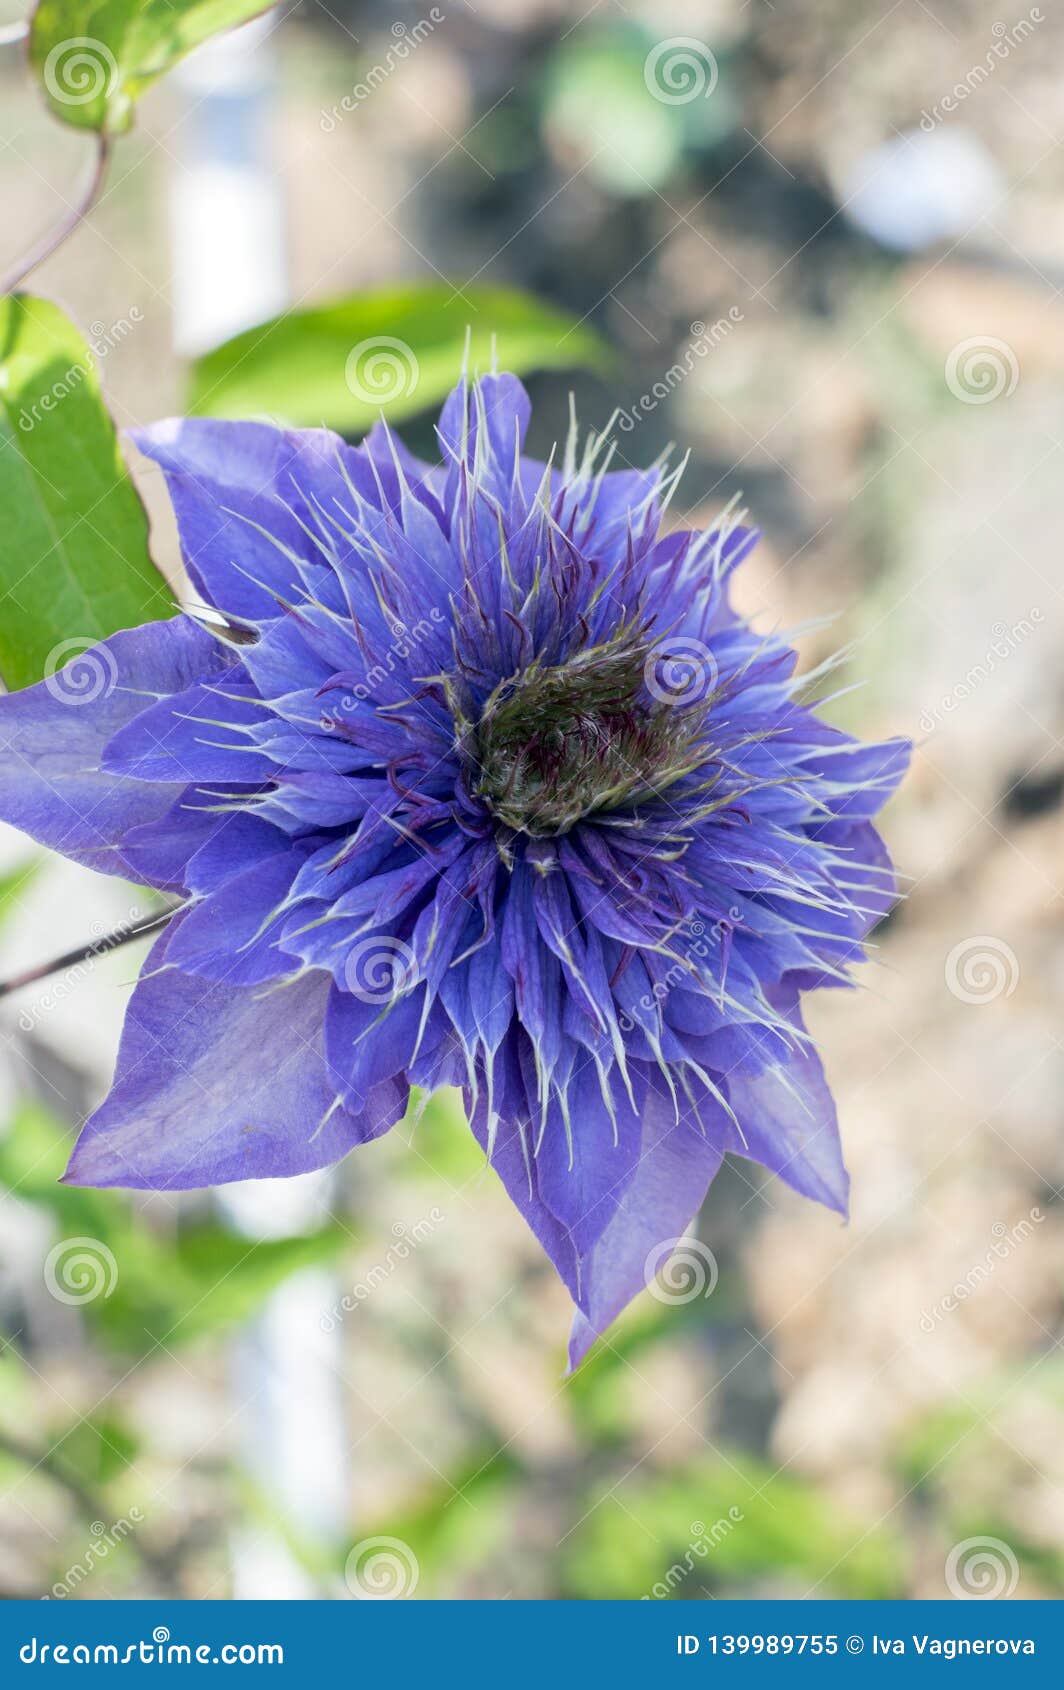 Clematis Cultivar Multi Blue Ornamental Flowering Plants, Violet Blue ...